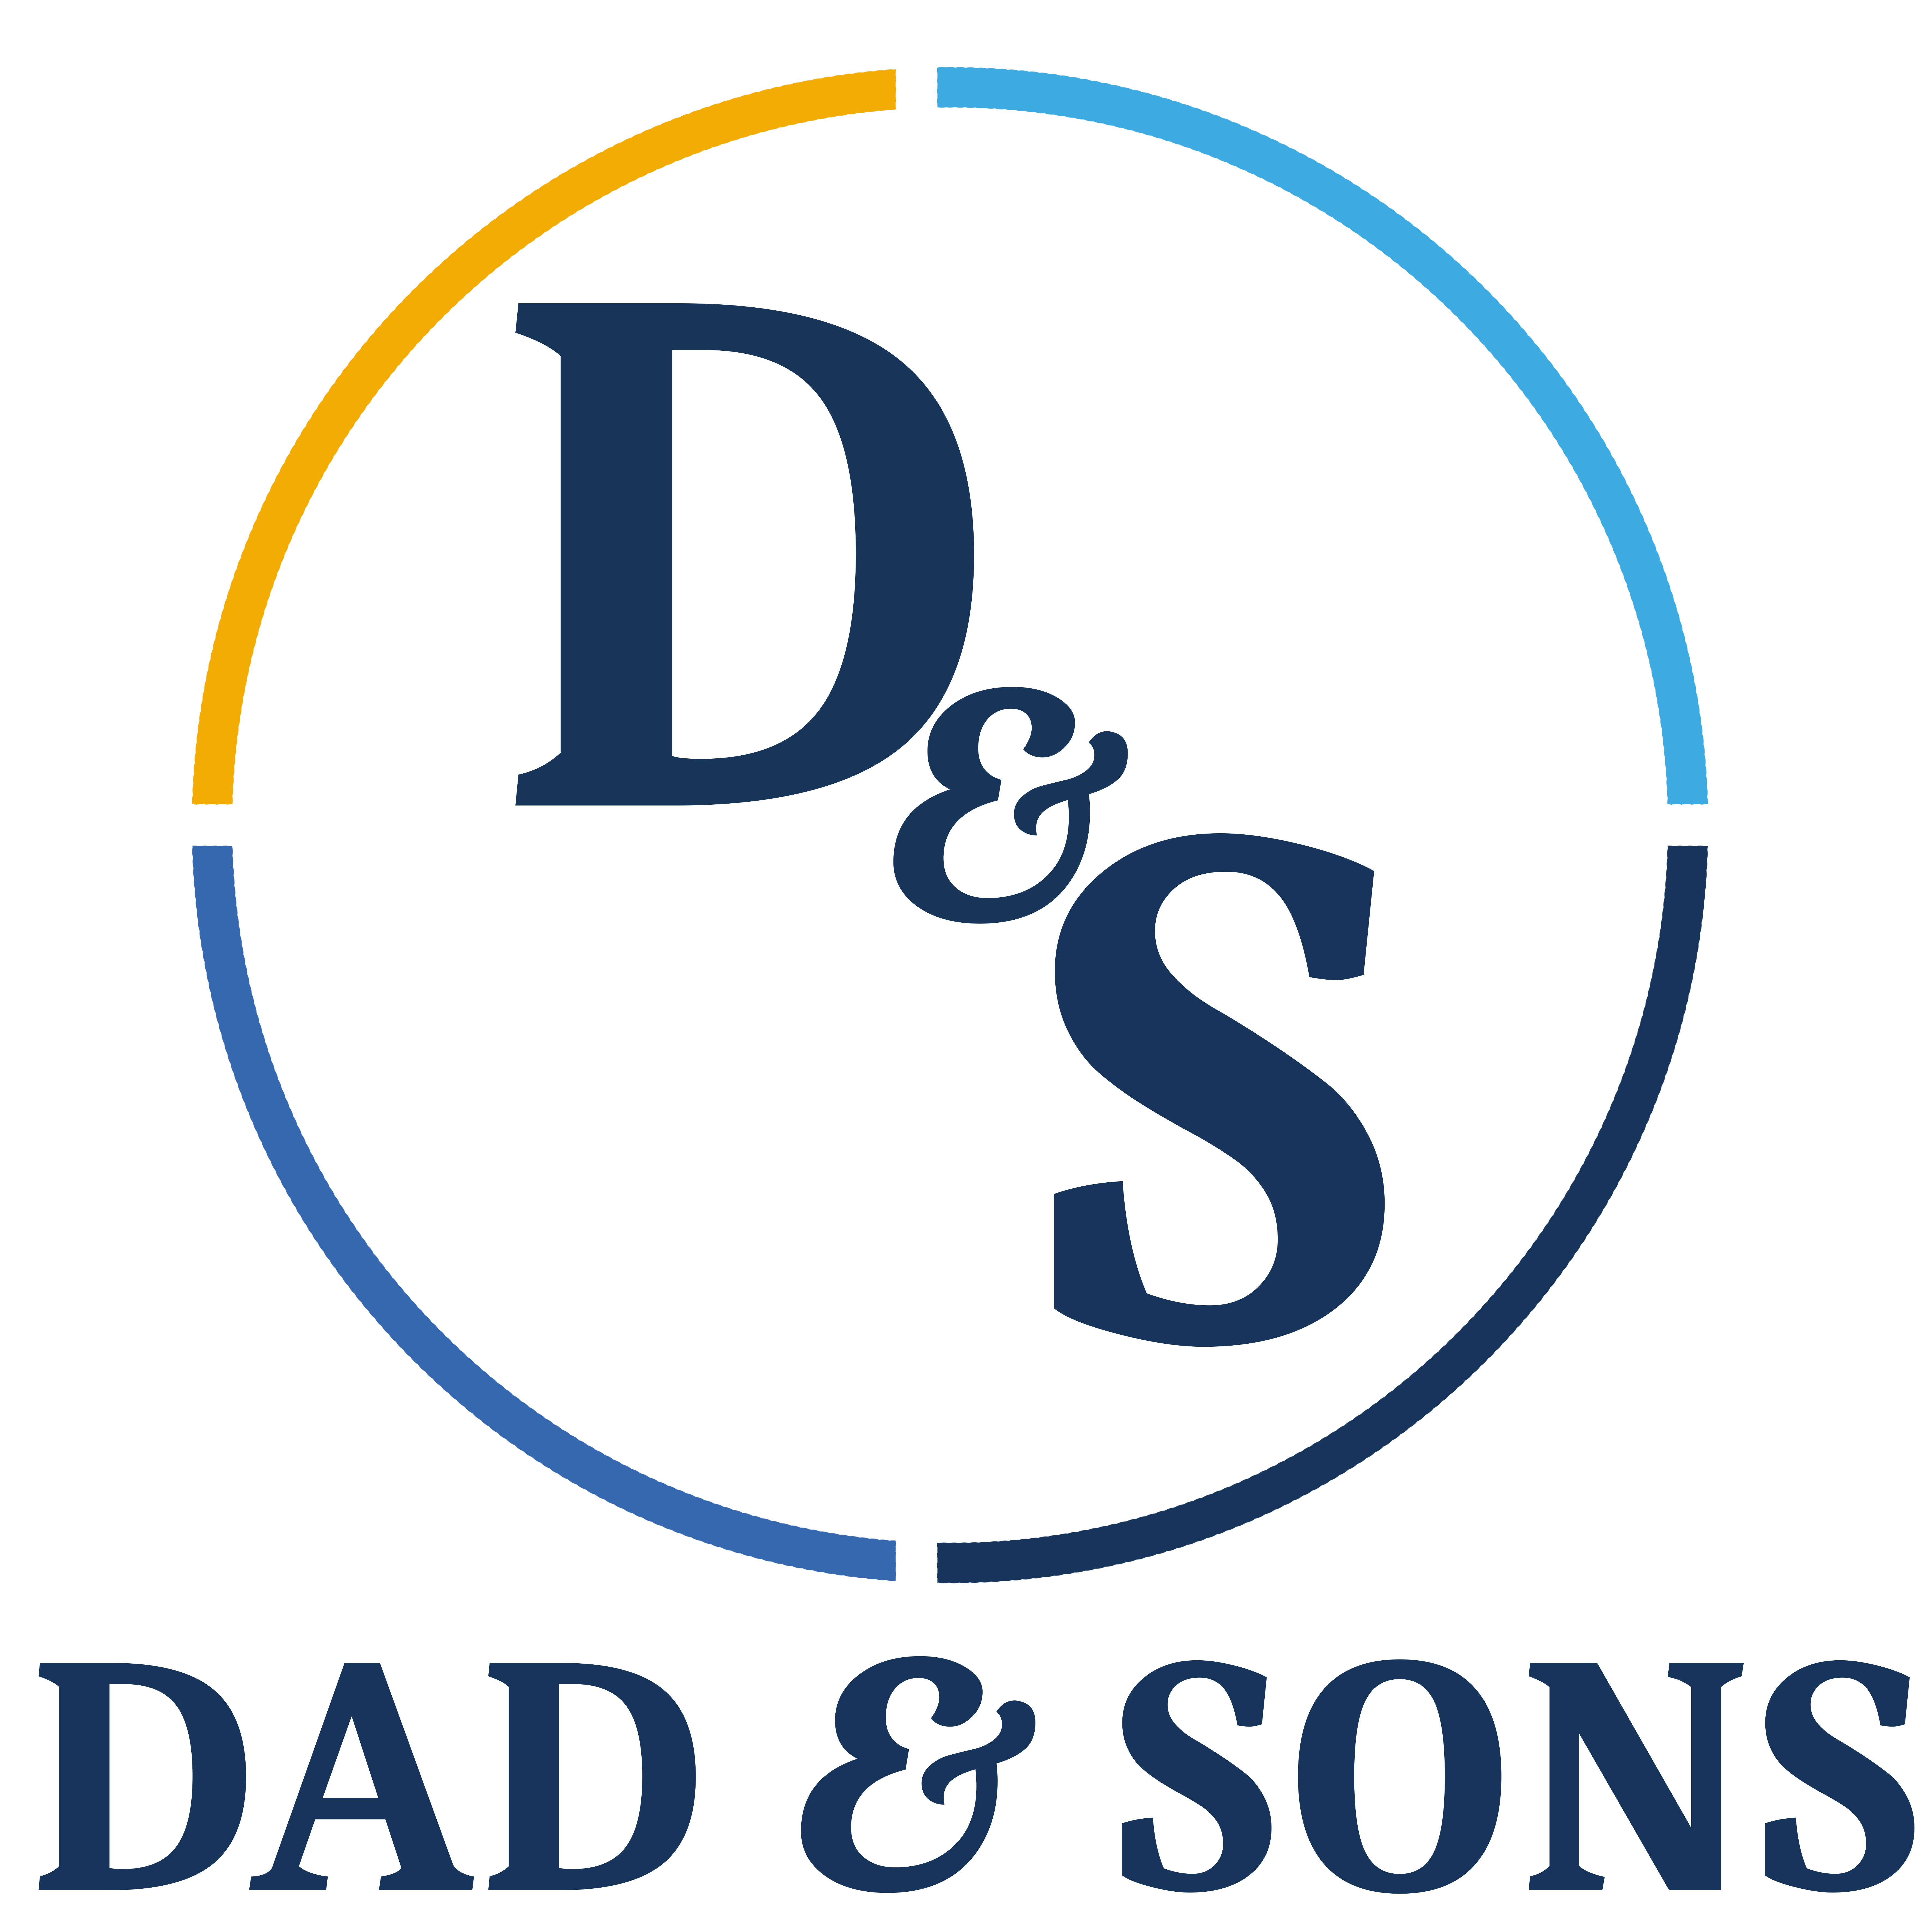 Dad & Sons